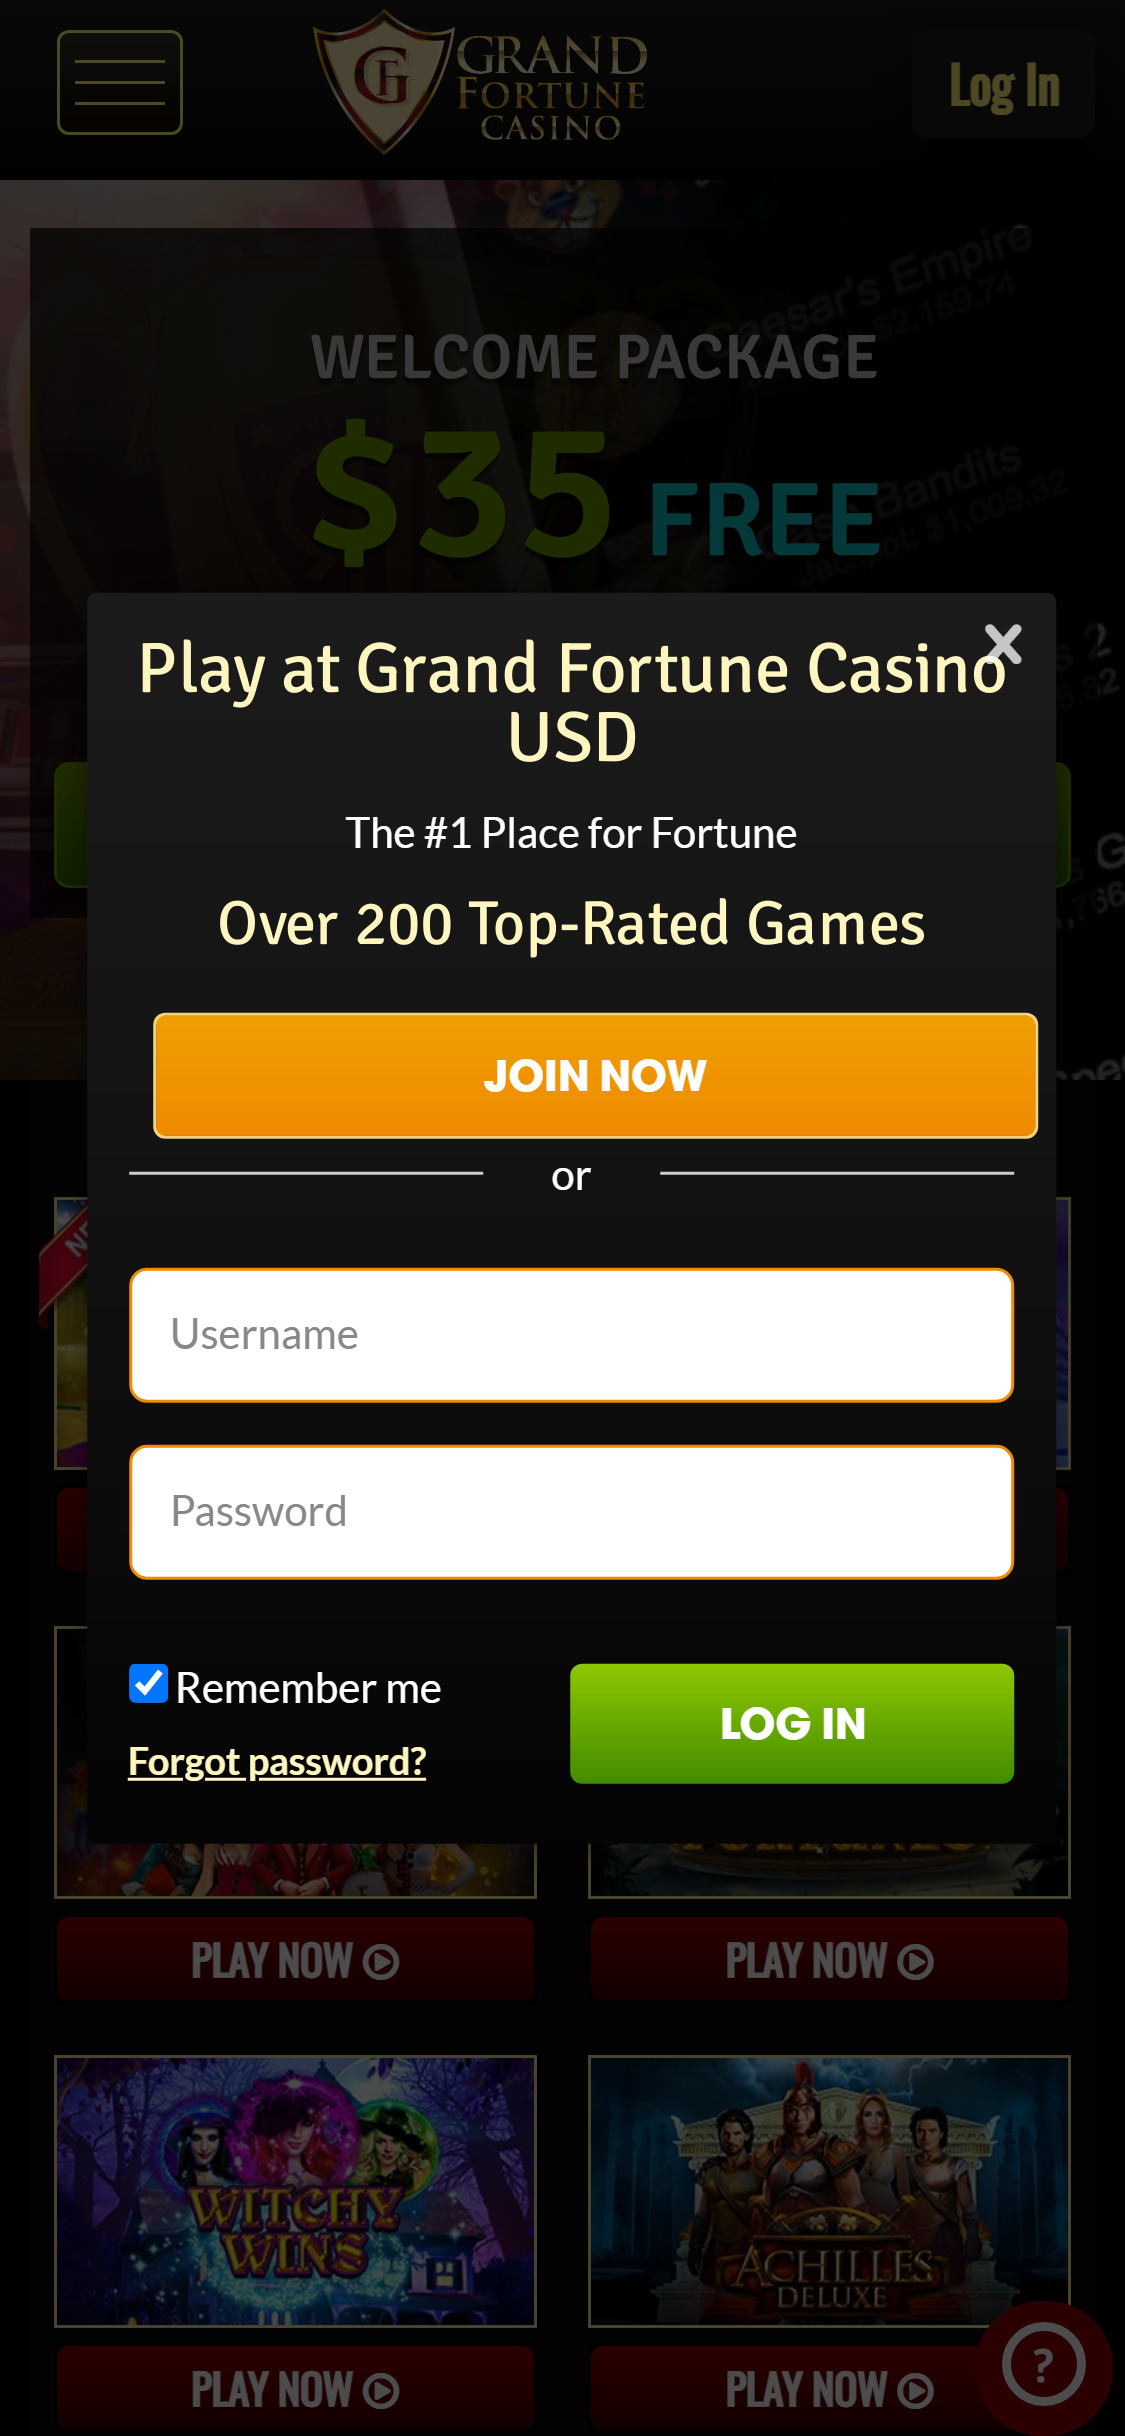 Grand Fortune Casino Mobile Login Review